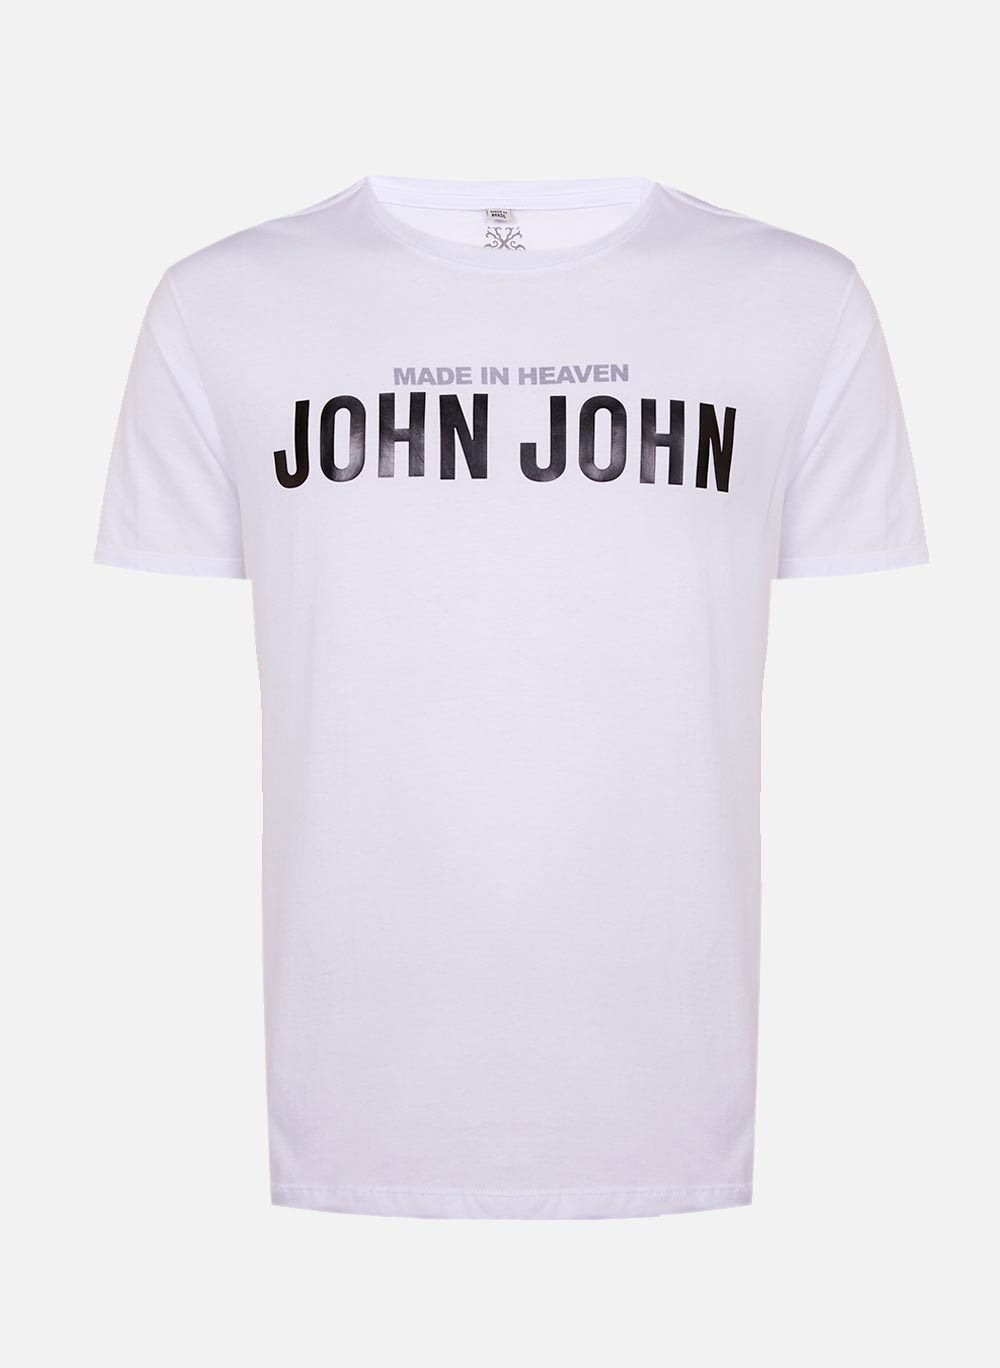 Camiseta John Transfer Black John John Masculina 42.54.5186 - Camiseta John  Transfer Black John John Masculina - JOHN JOHN MASC